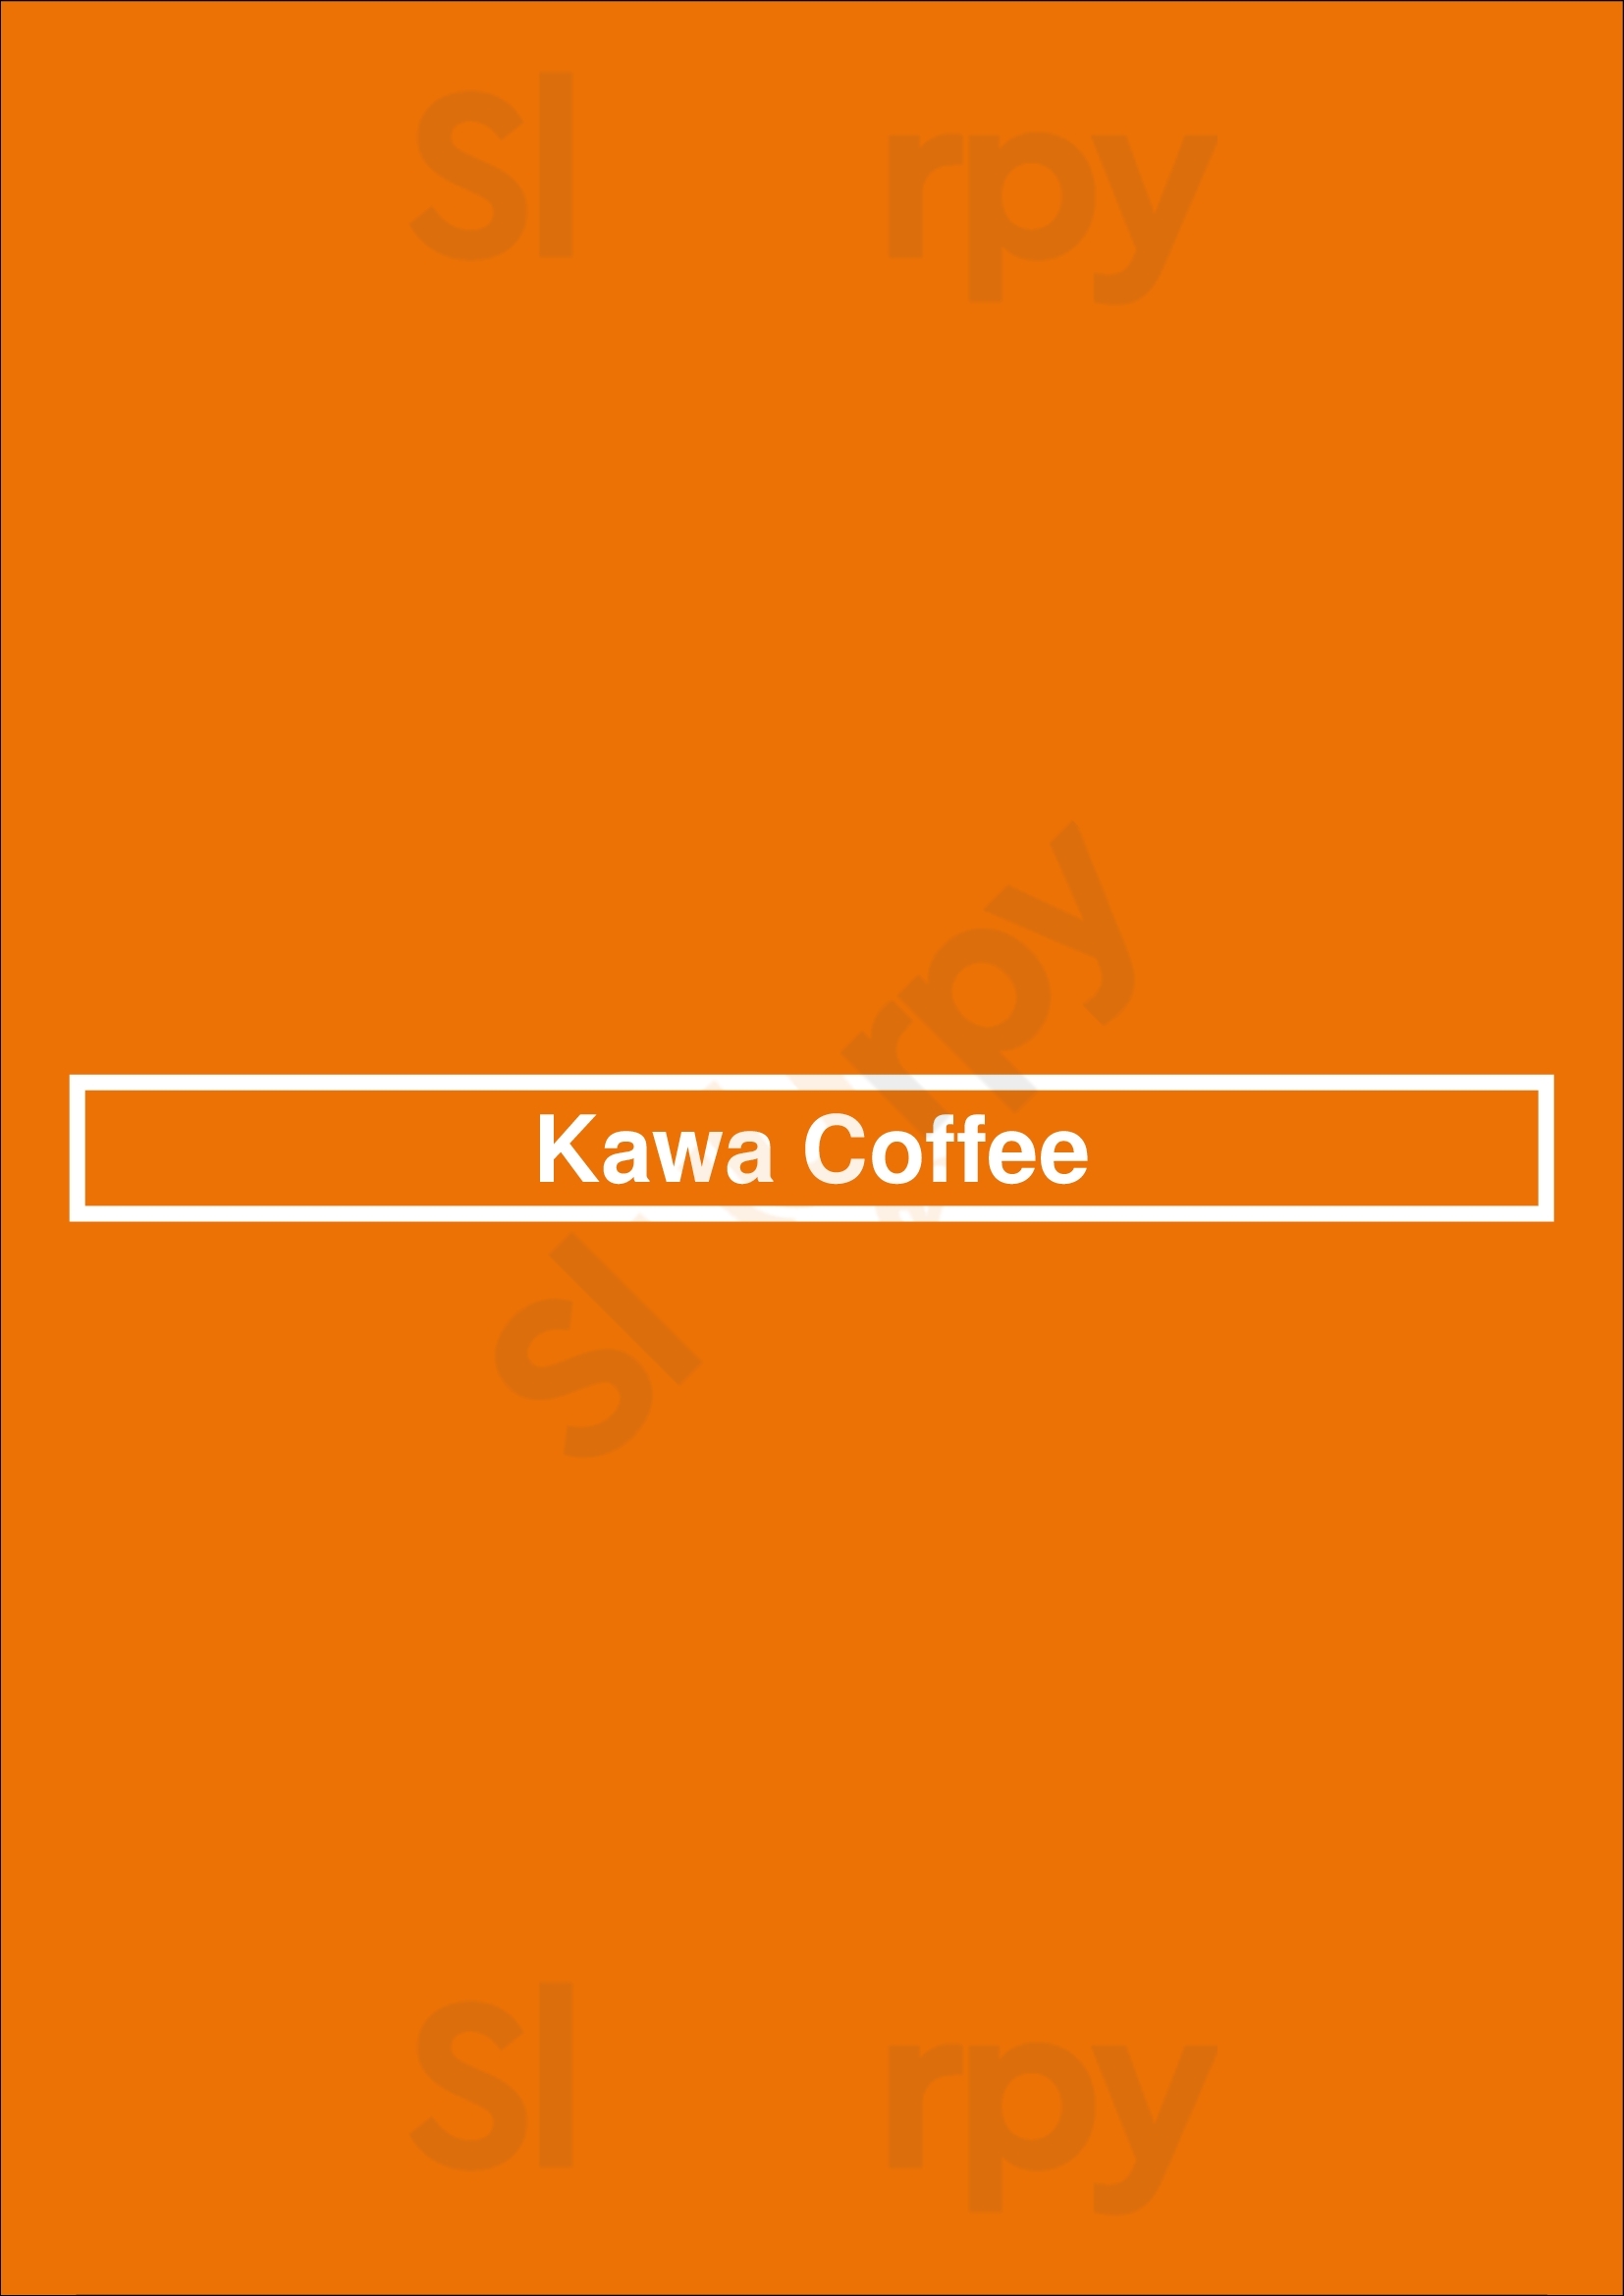 Kawa Coffee Colorado Springs Menu - 1